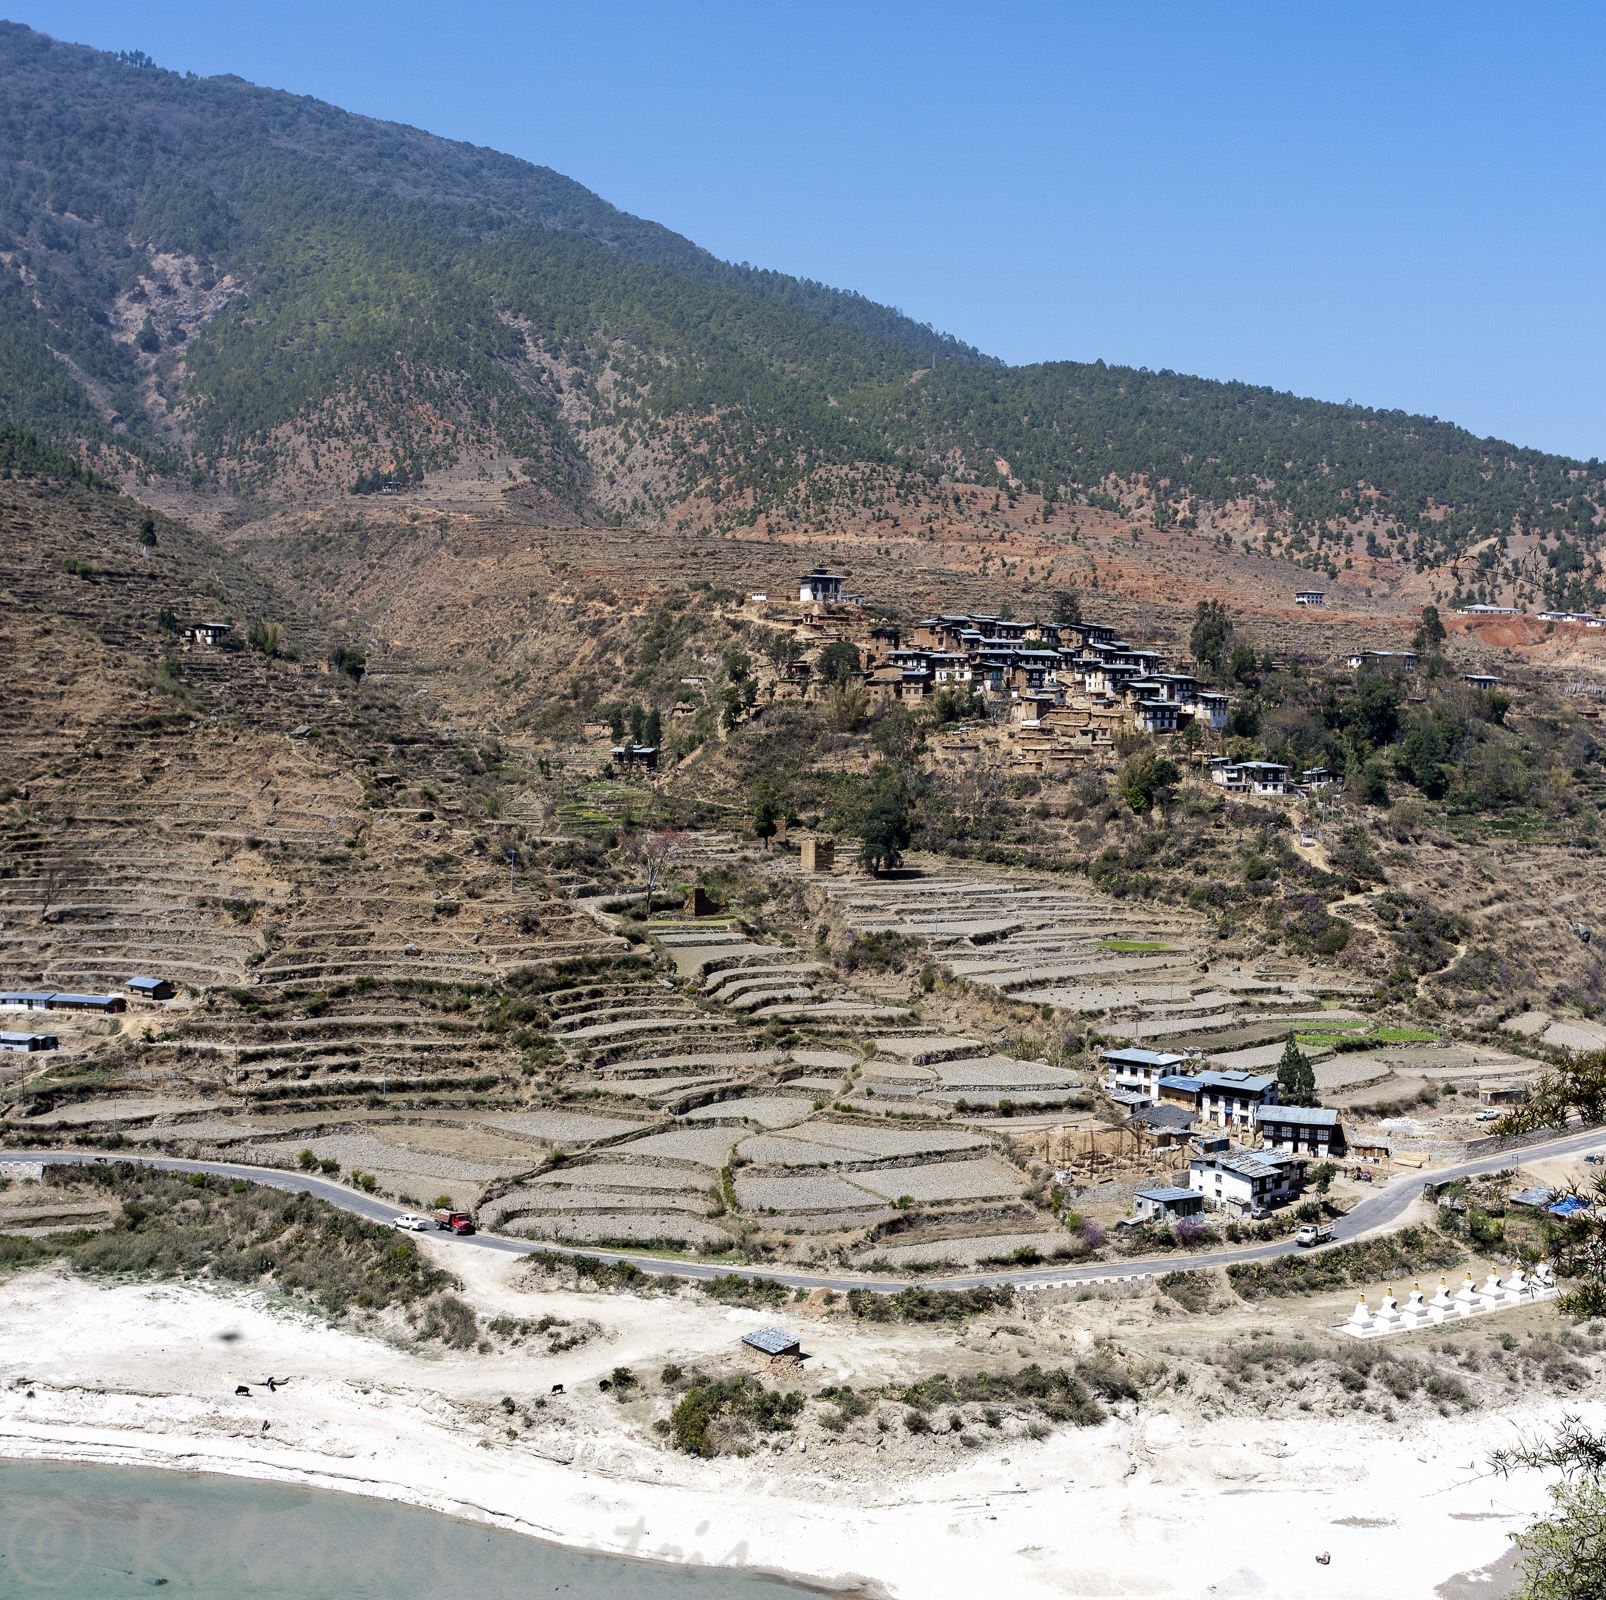 La vallée au pied du Dzong de Wangduephodrang.